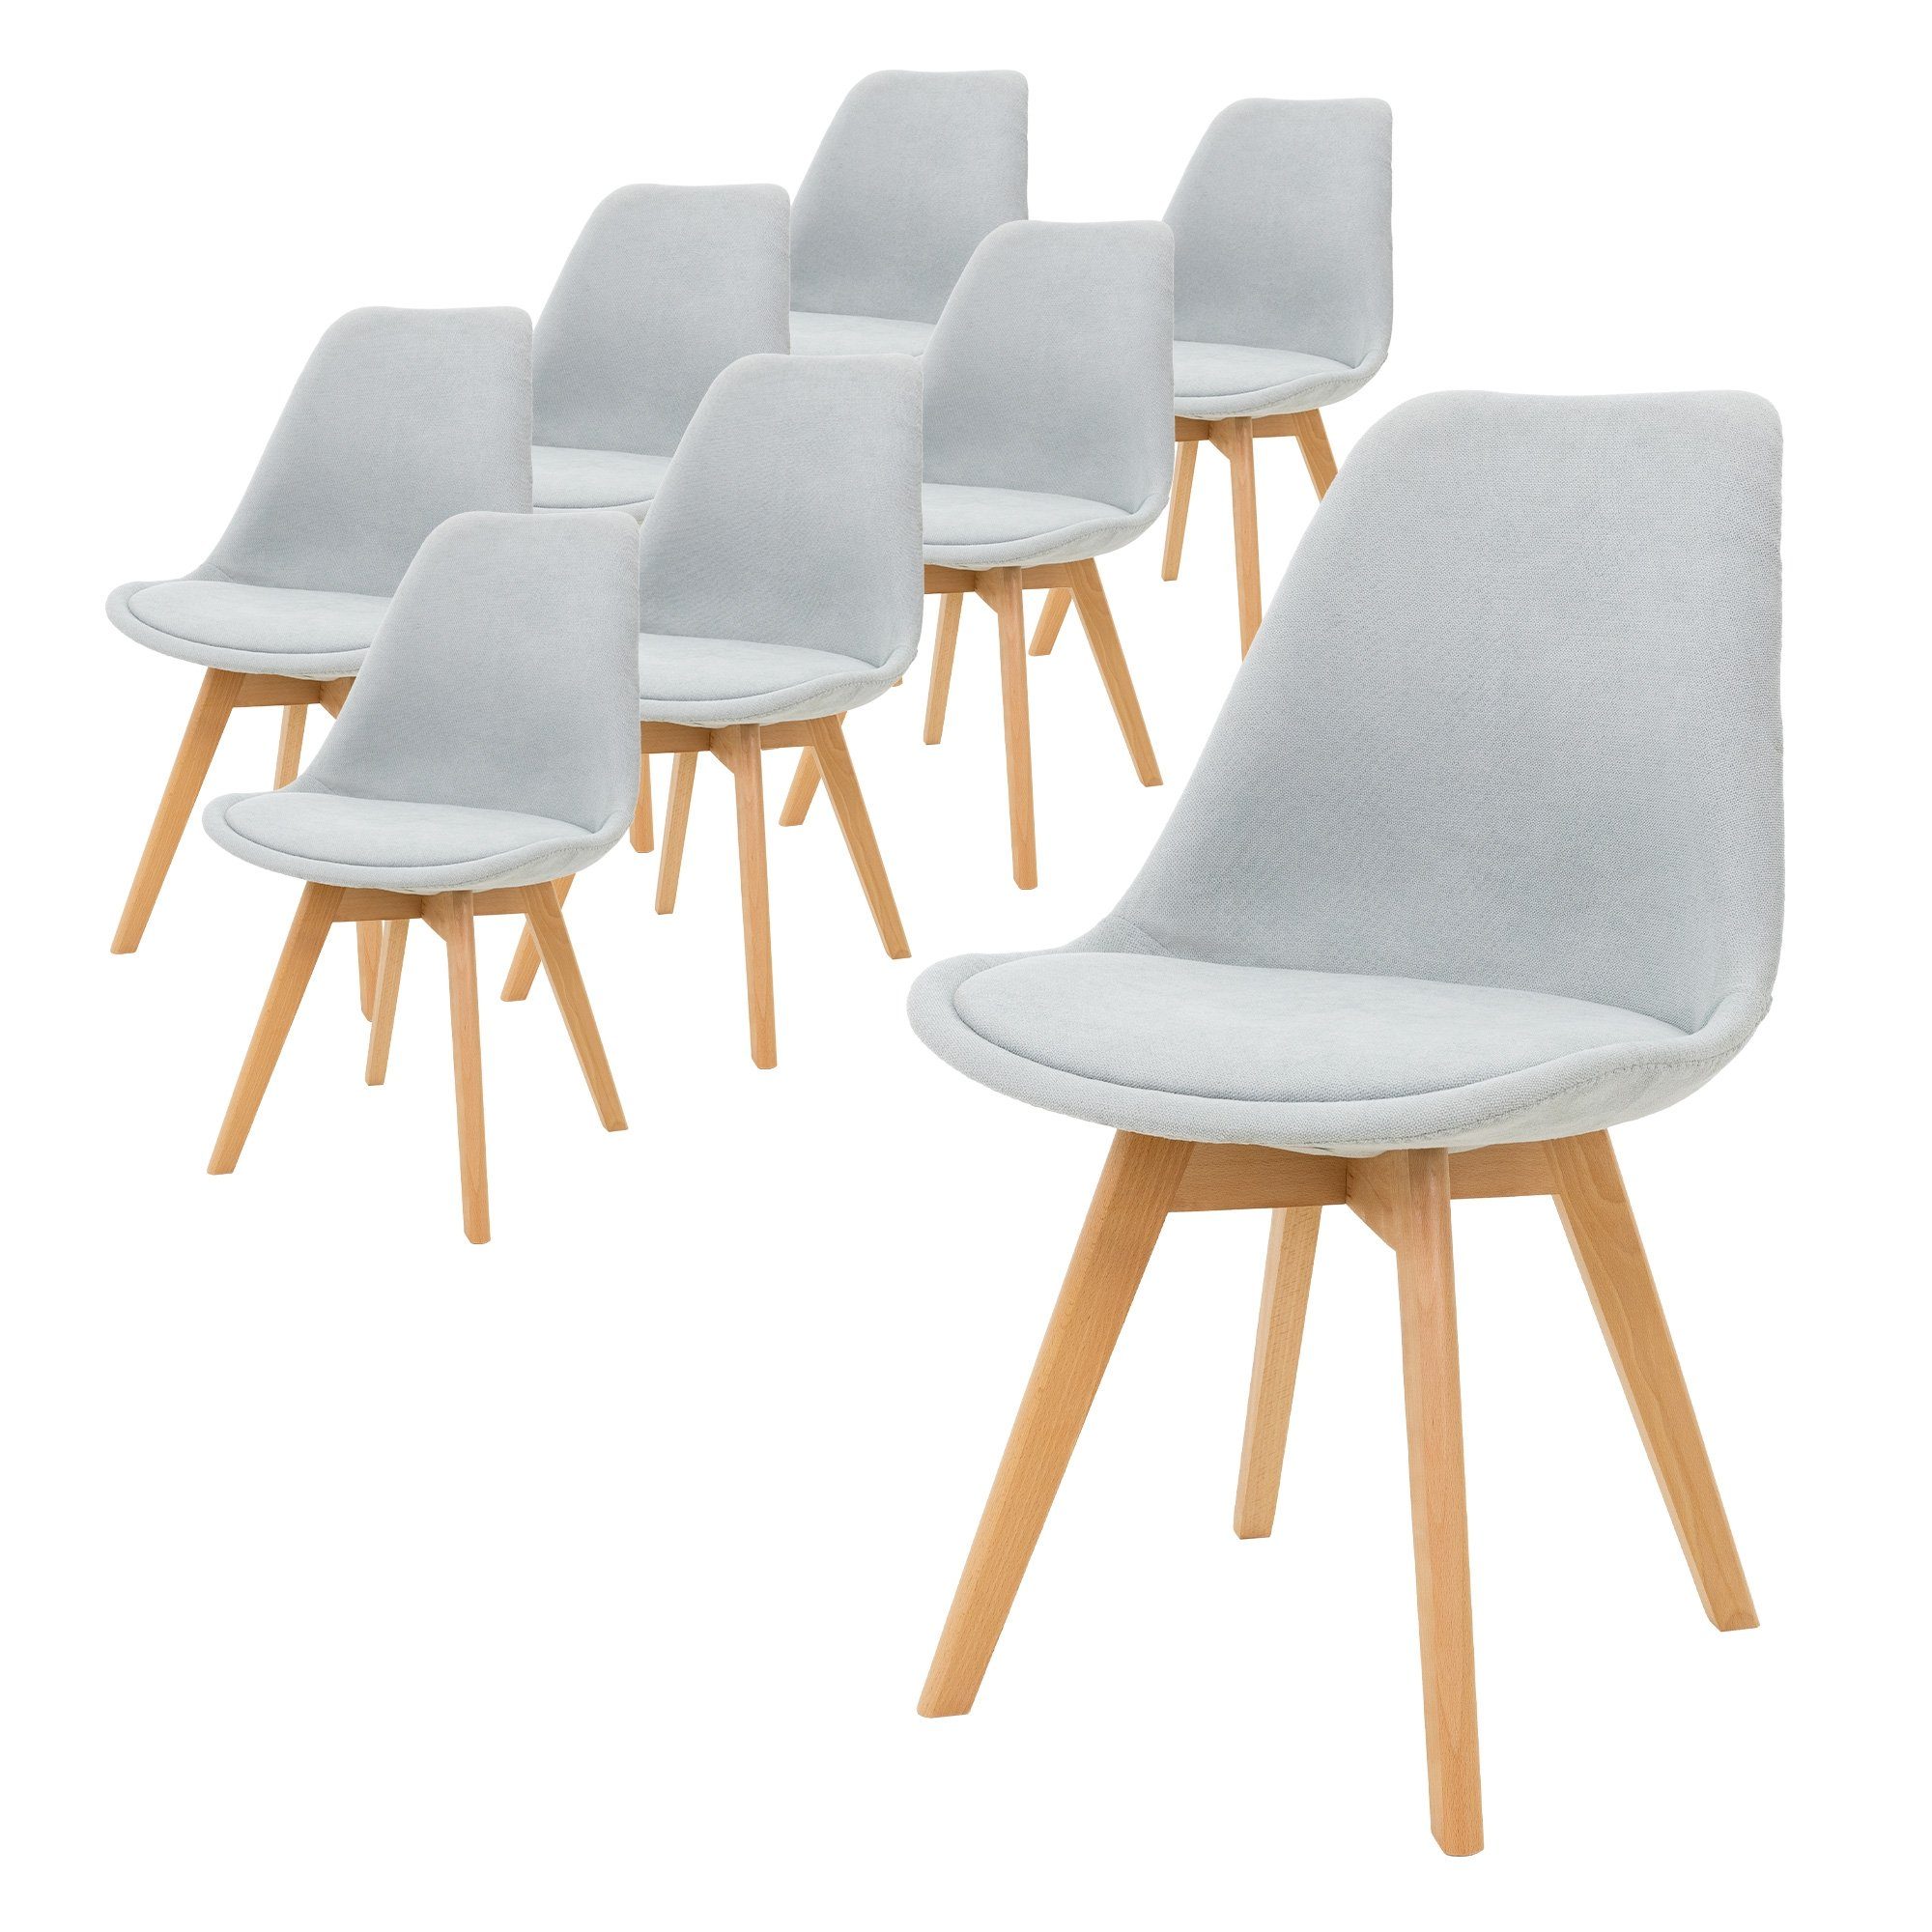 ML-DESIGN Stuhl Esszimmerstühle mit Rückenlehne Retro mit Buchenholz-Beinen (8 St), 8x Wohnzimmerstühle Grau mit Sitzfläche aus Leinen 49x55x83cm